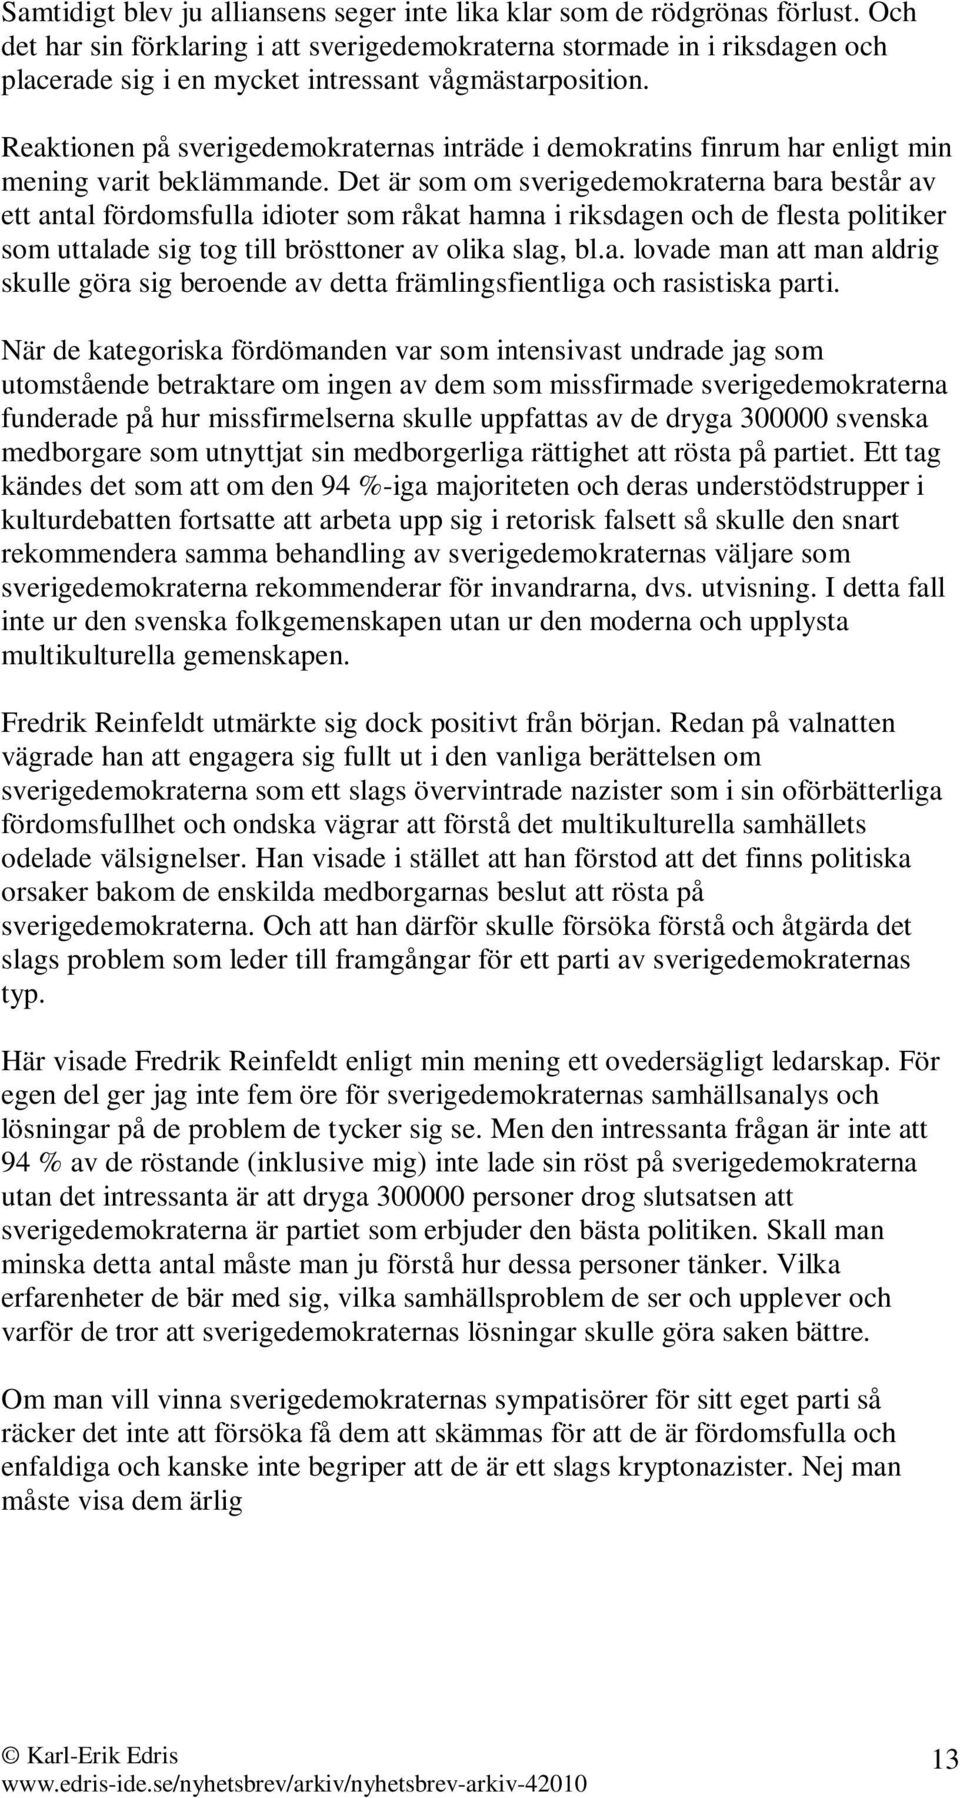 Reaktionen på sverigedemokraternas inträde i demokratins finrum har enligt min mening varit beklämmande.